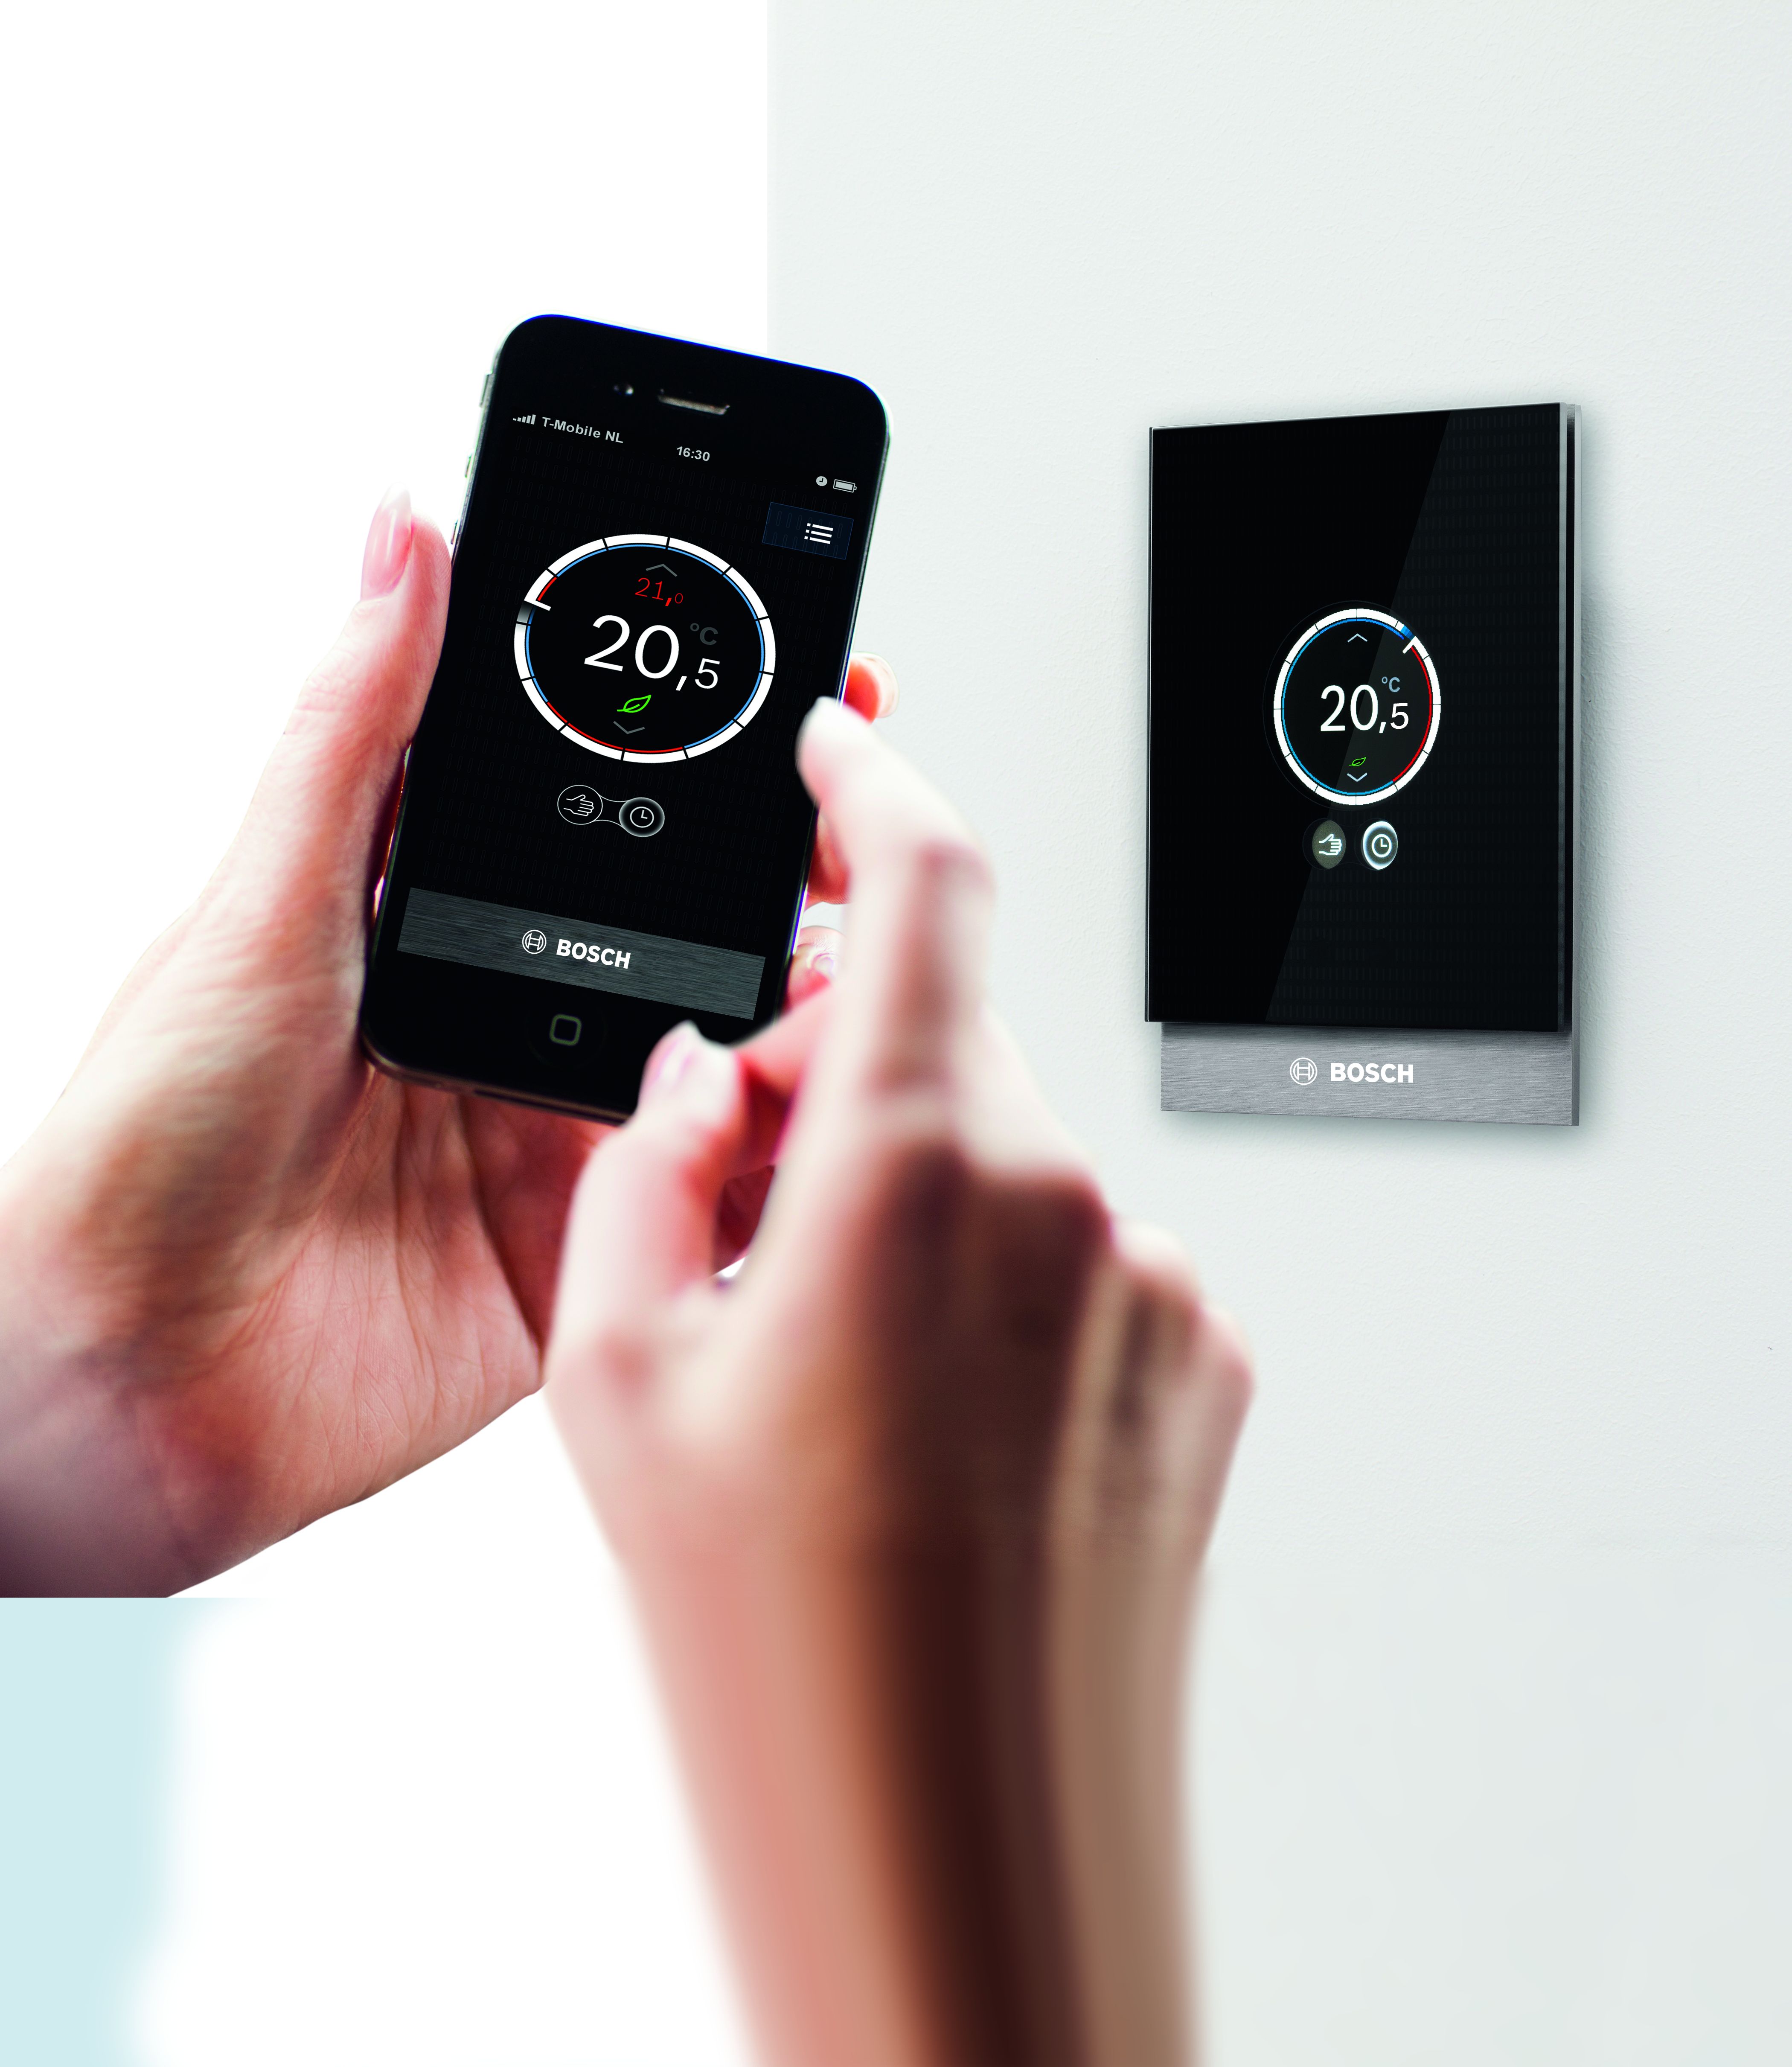 Bosch presenta CT100 -  Il nuovo termostato di design intelligente e intuitivo